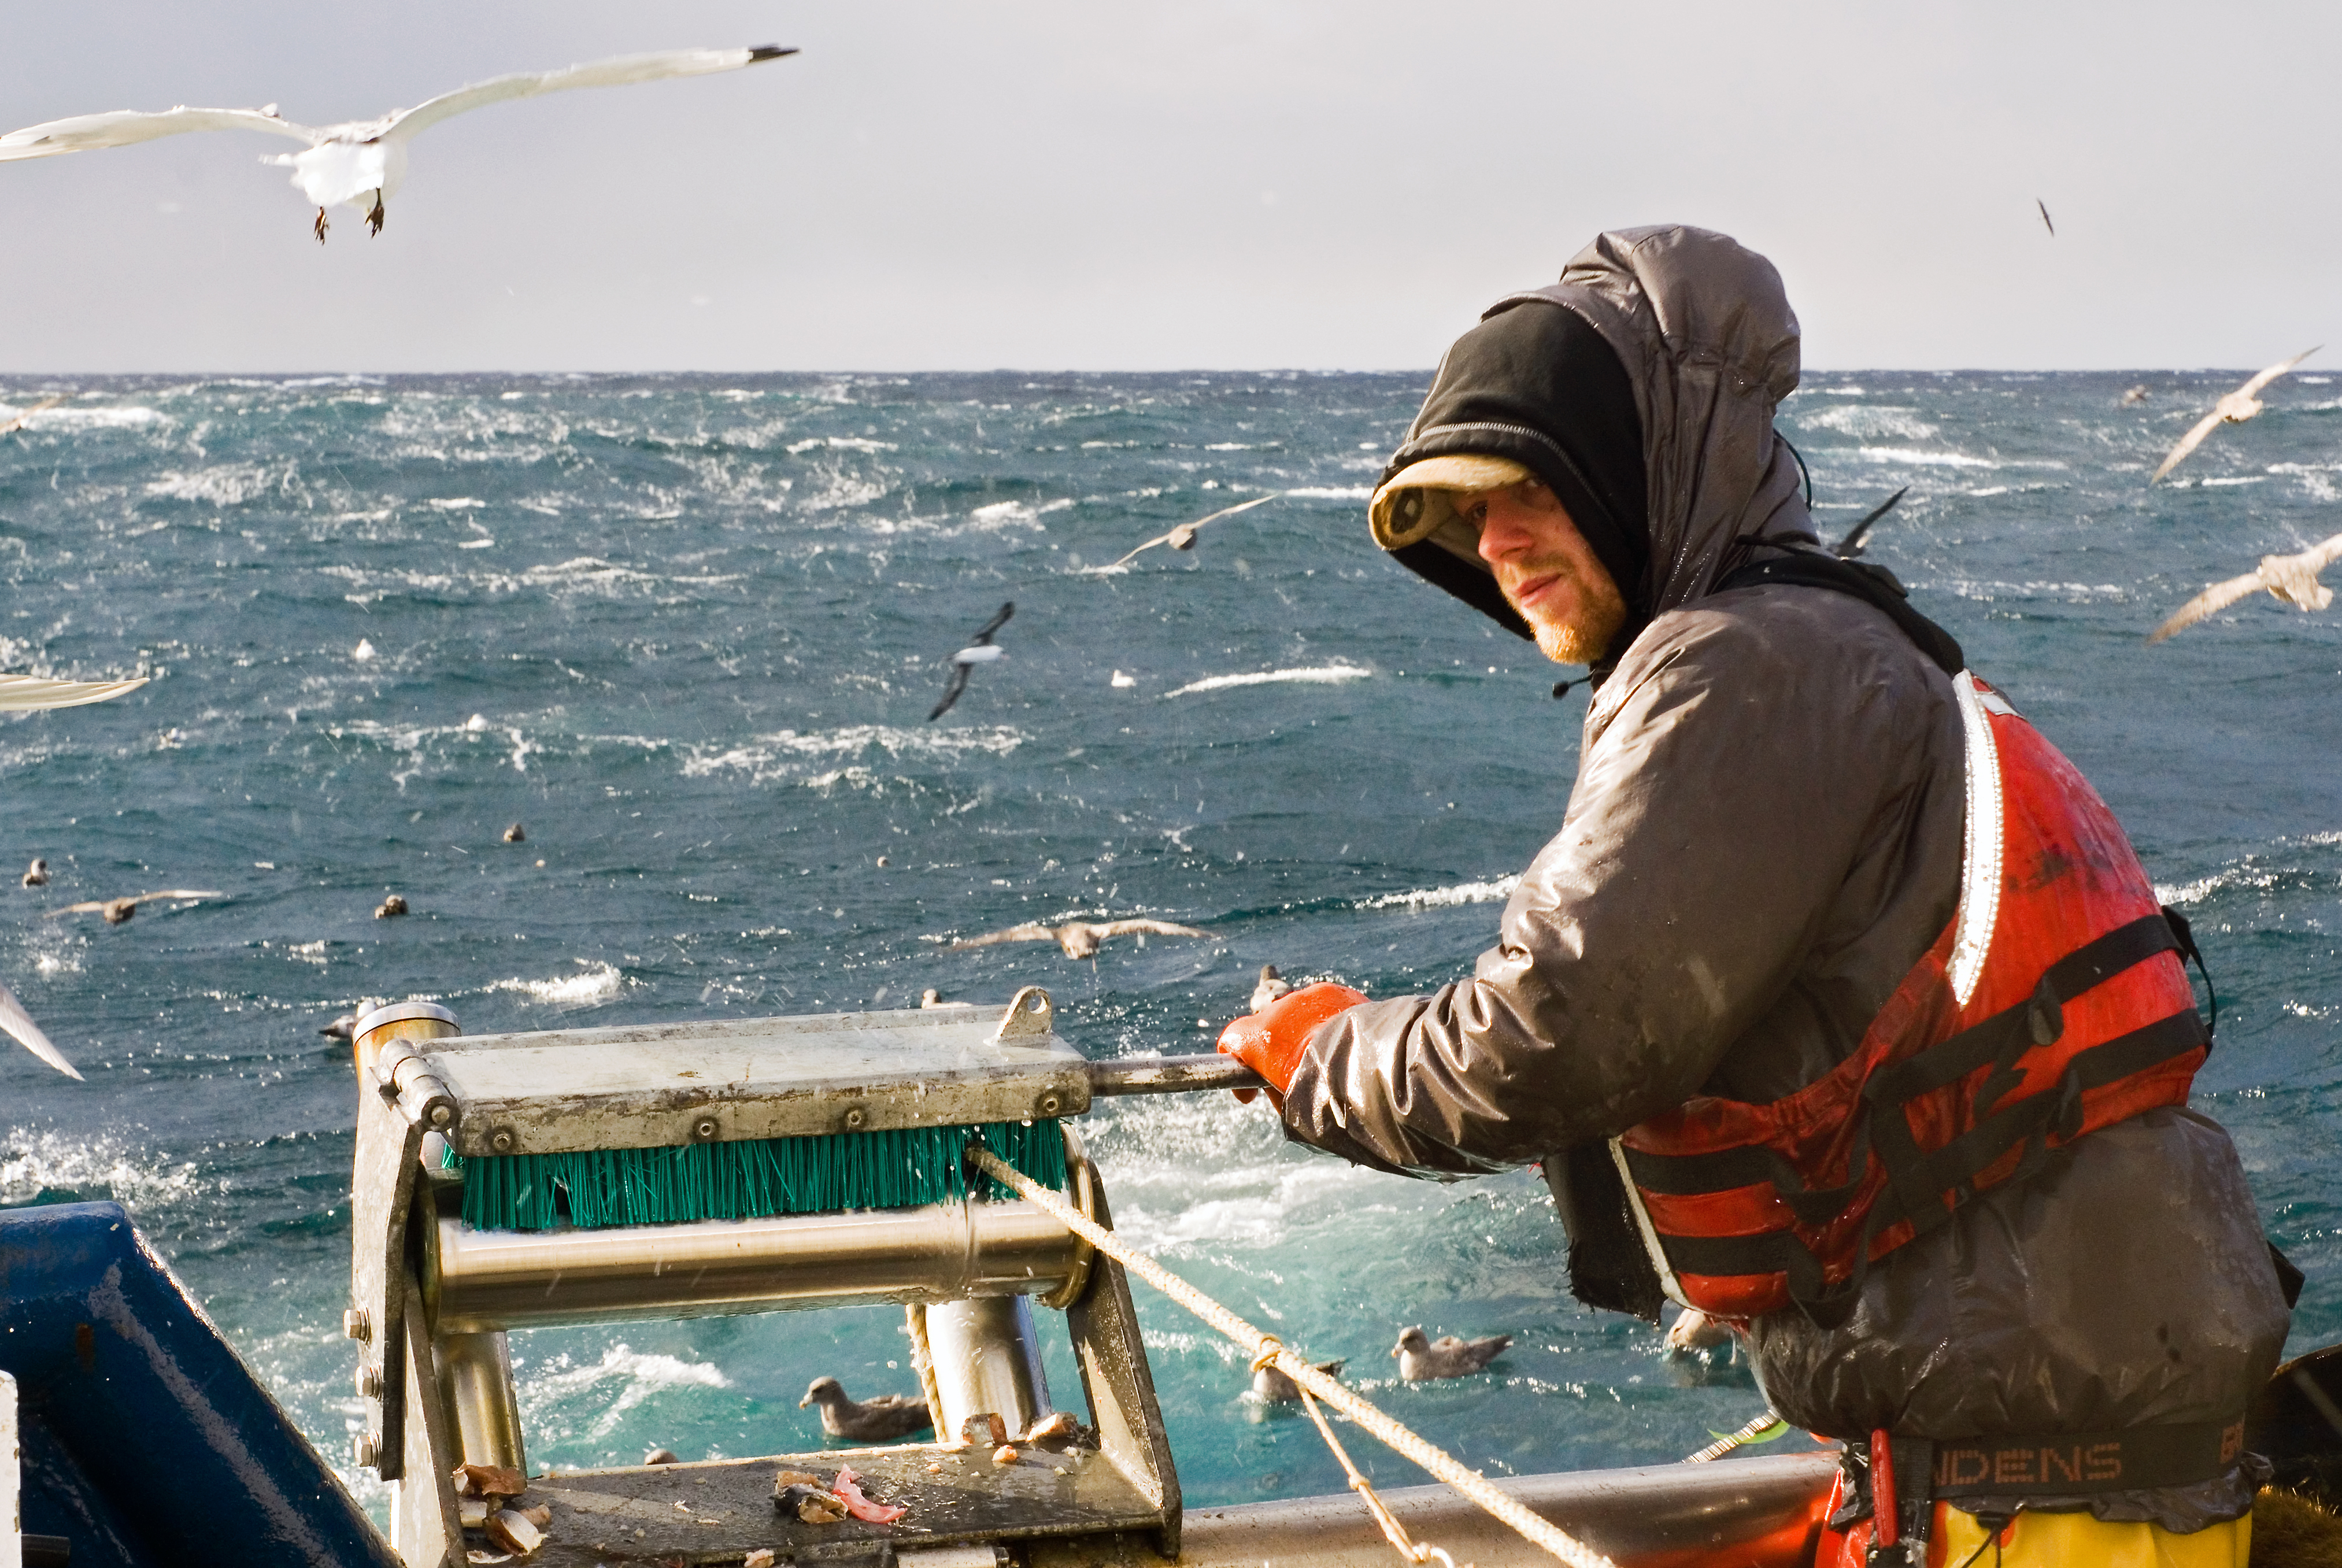 Моряк ловит рыбу. Охотское море рыболовство. Балтийское море промышленный лов рыбы. Промысел рыбы. Рыбаки на корабле.